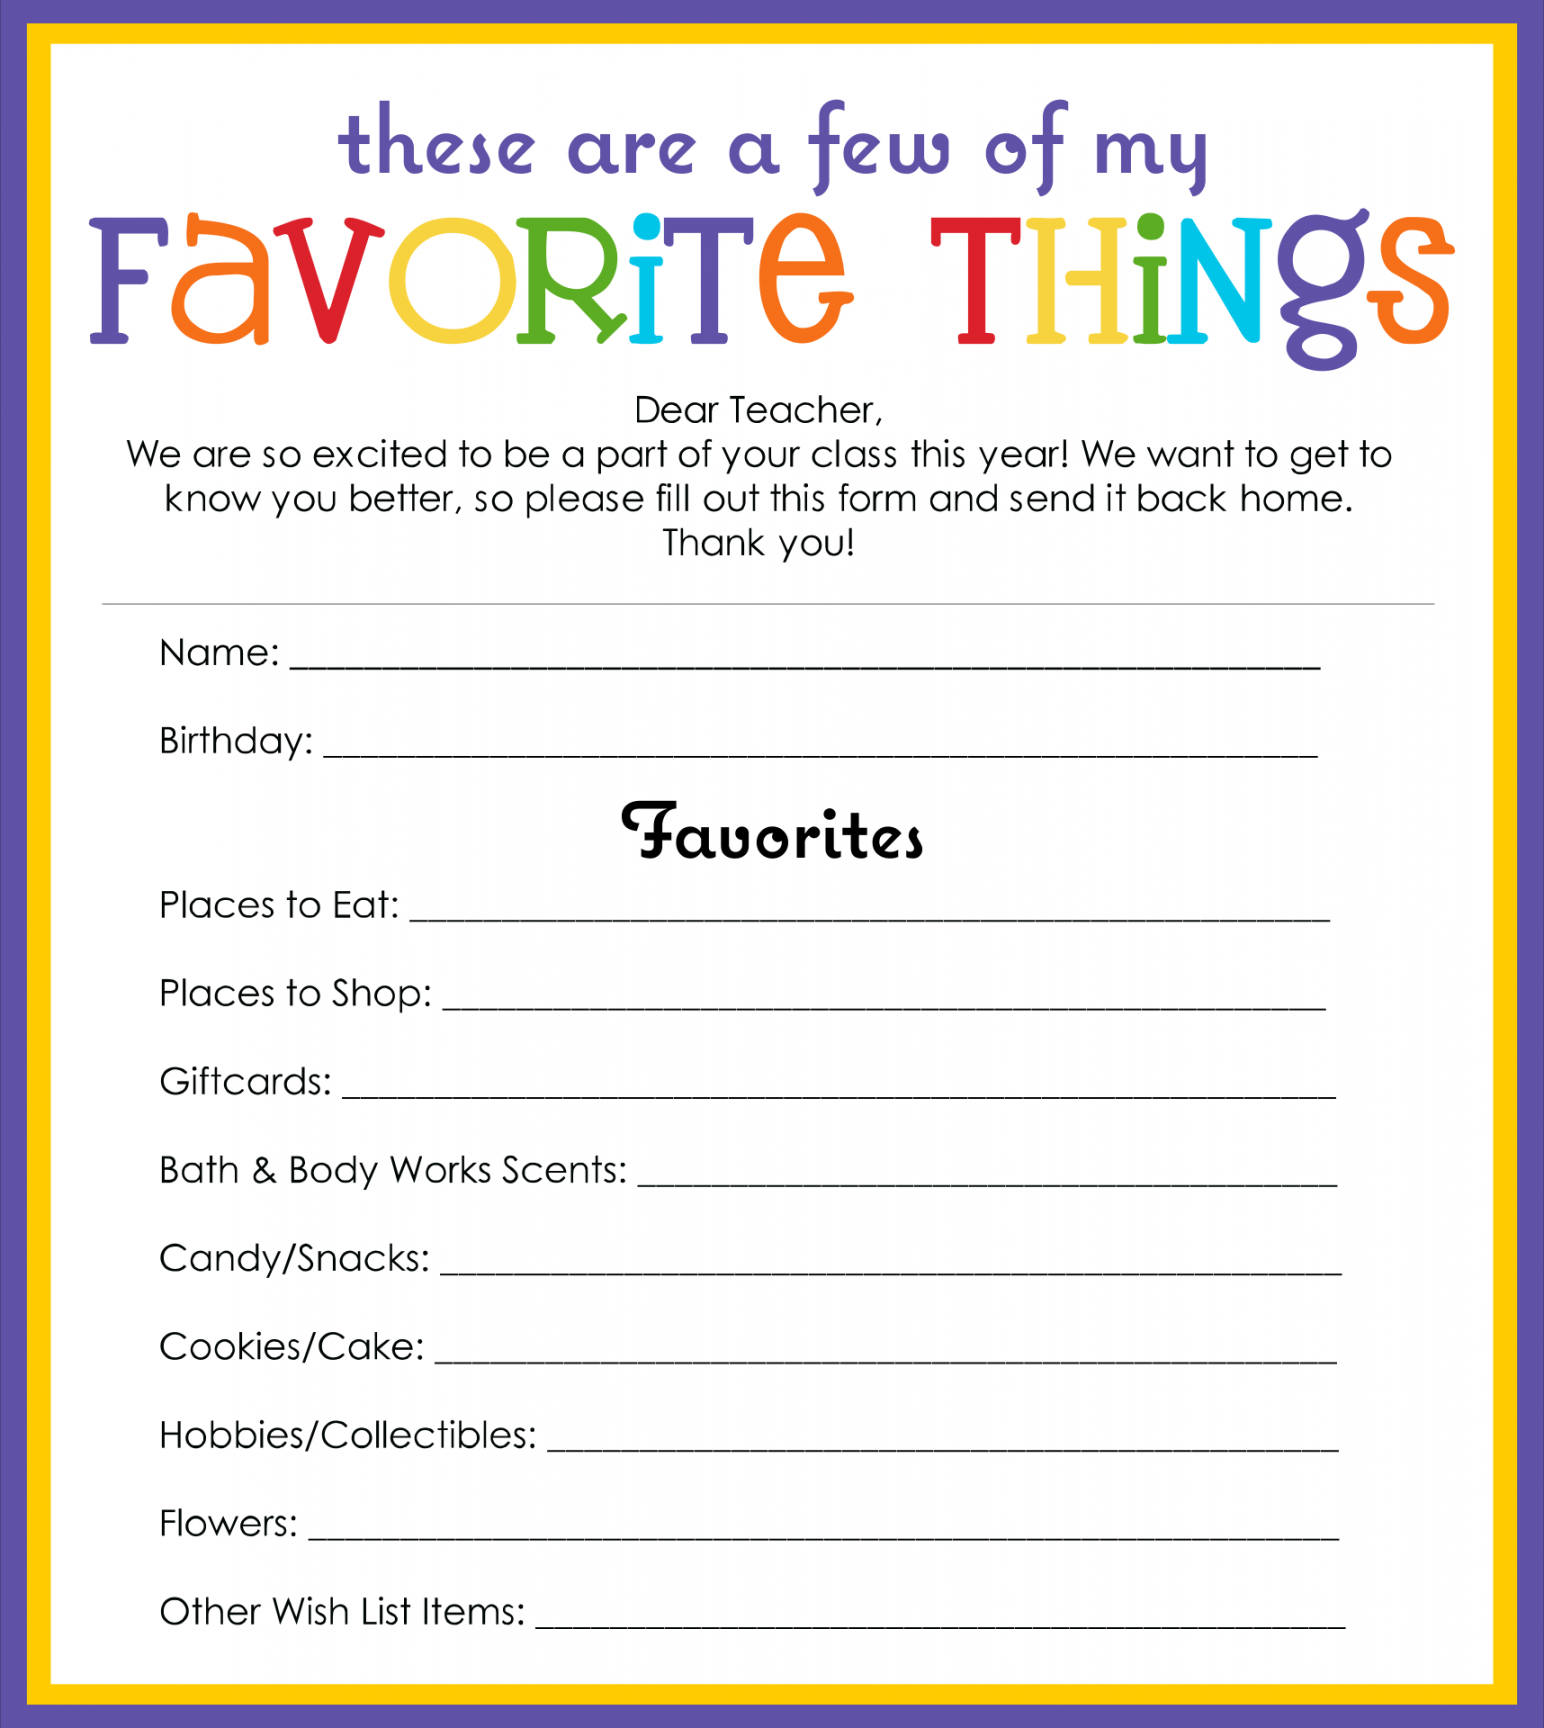 Best My Favorite Things Template Printable - printablee - Free Printable Employee Favorite Things List